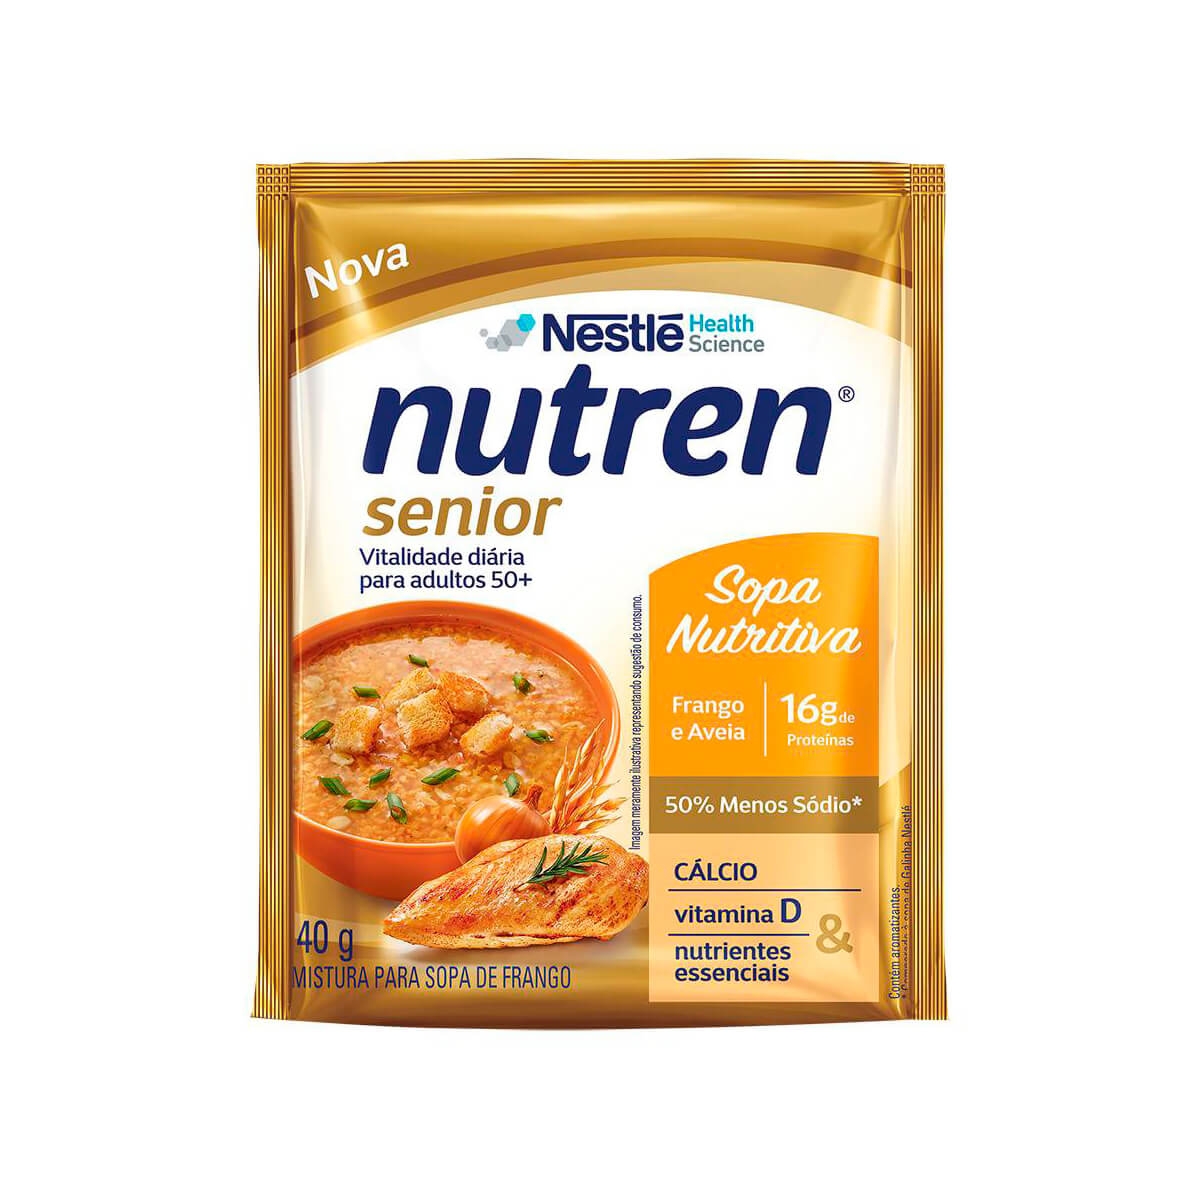 Sopa Nutritiva Nestlé Nutren Senior Frango e Aveia com 40g 40g